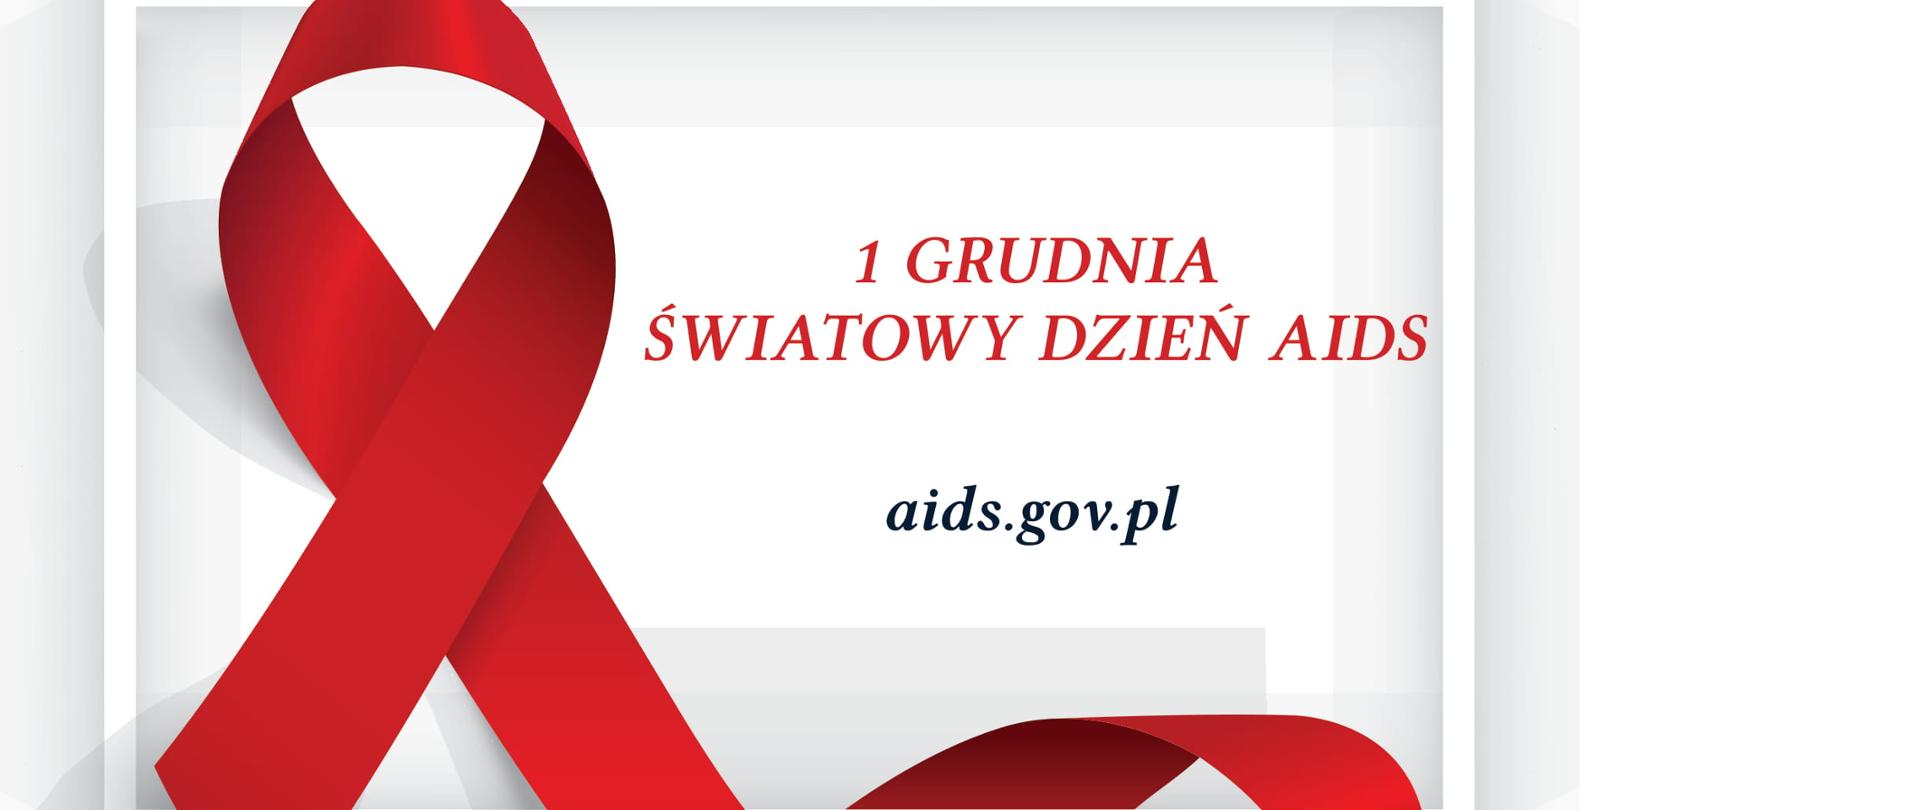 Ilustracja przedstawia prostokątną białą ramkę we wnętrzu, której znajduję się czerwona wstążka owijająca prawym jej ramieniem dolną część ramki. W prawej części wnętrza ramki widnieje napis ,,1 Grudnia Światowy Dzień AIDS” oraz adres internetowy strony aids.gov.pl